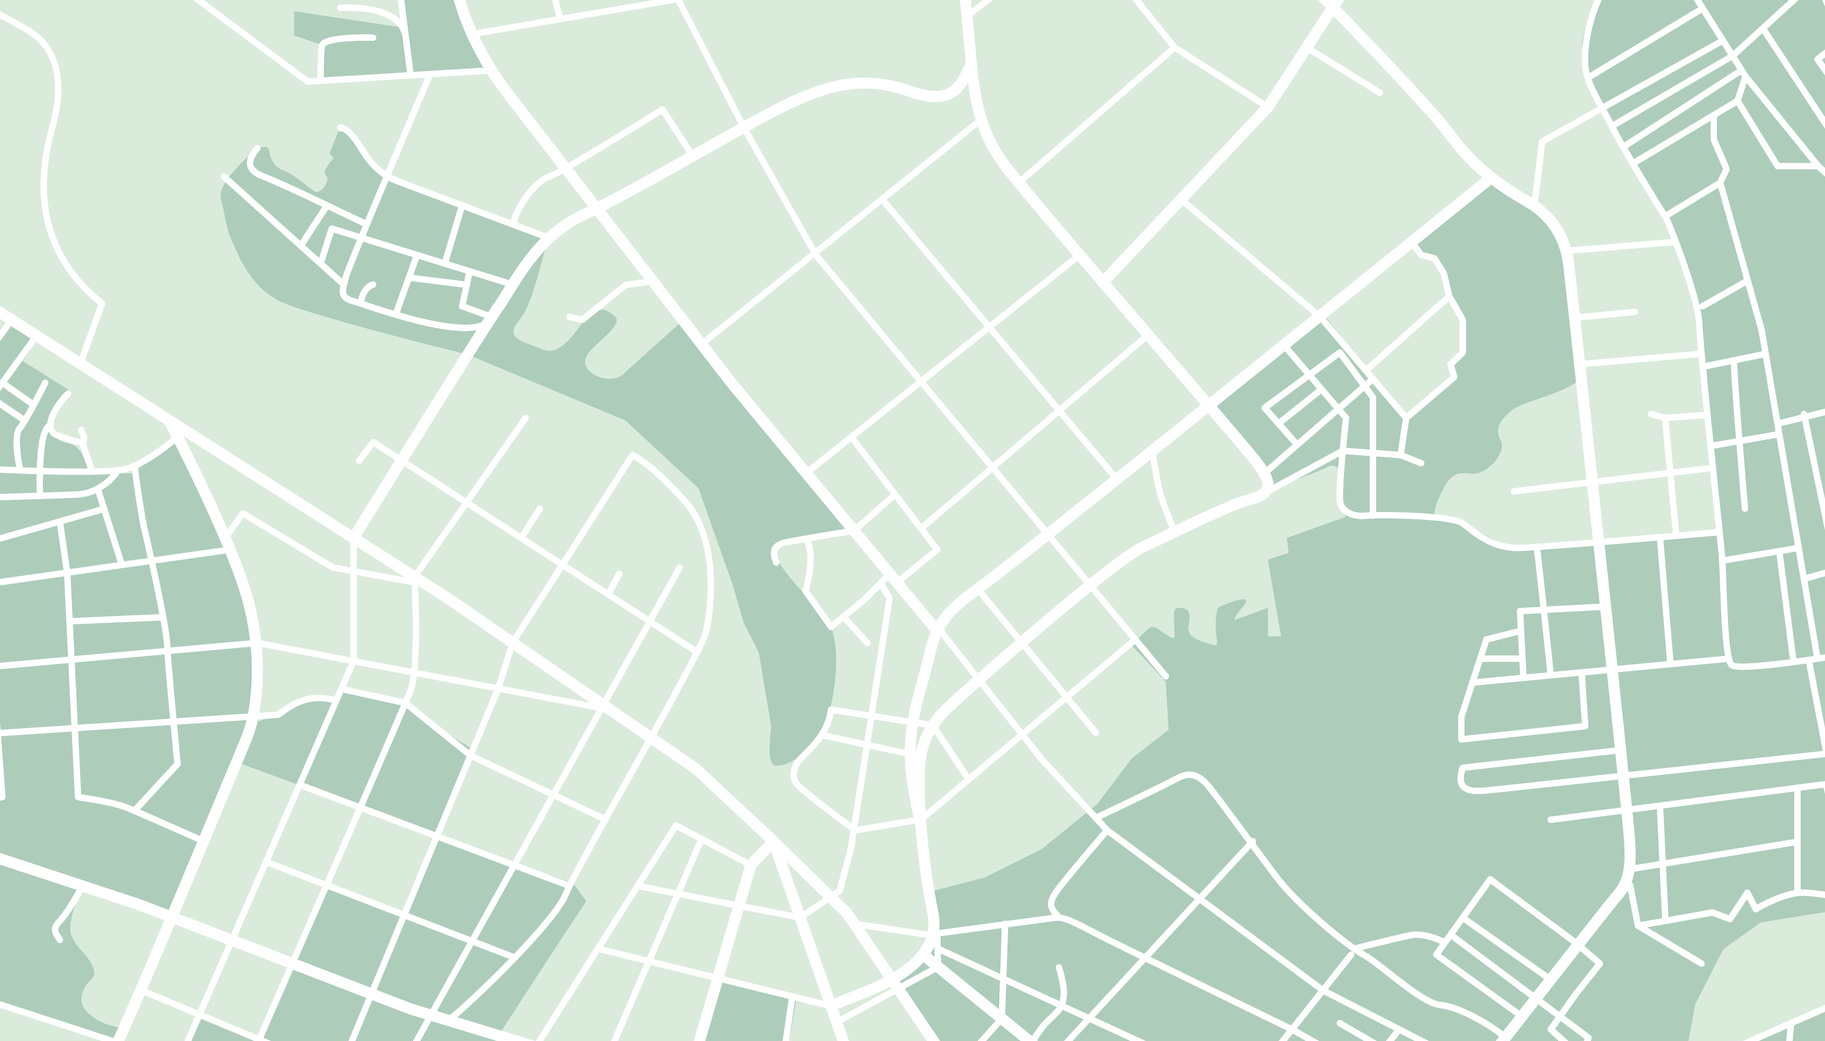 grafika przedstawia plan miasta ulice i tereny zielone bez dodatkowych oznaczeń i nazw